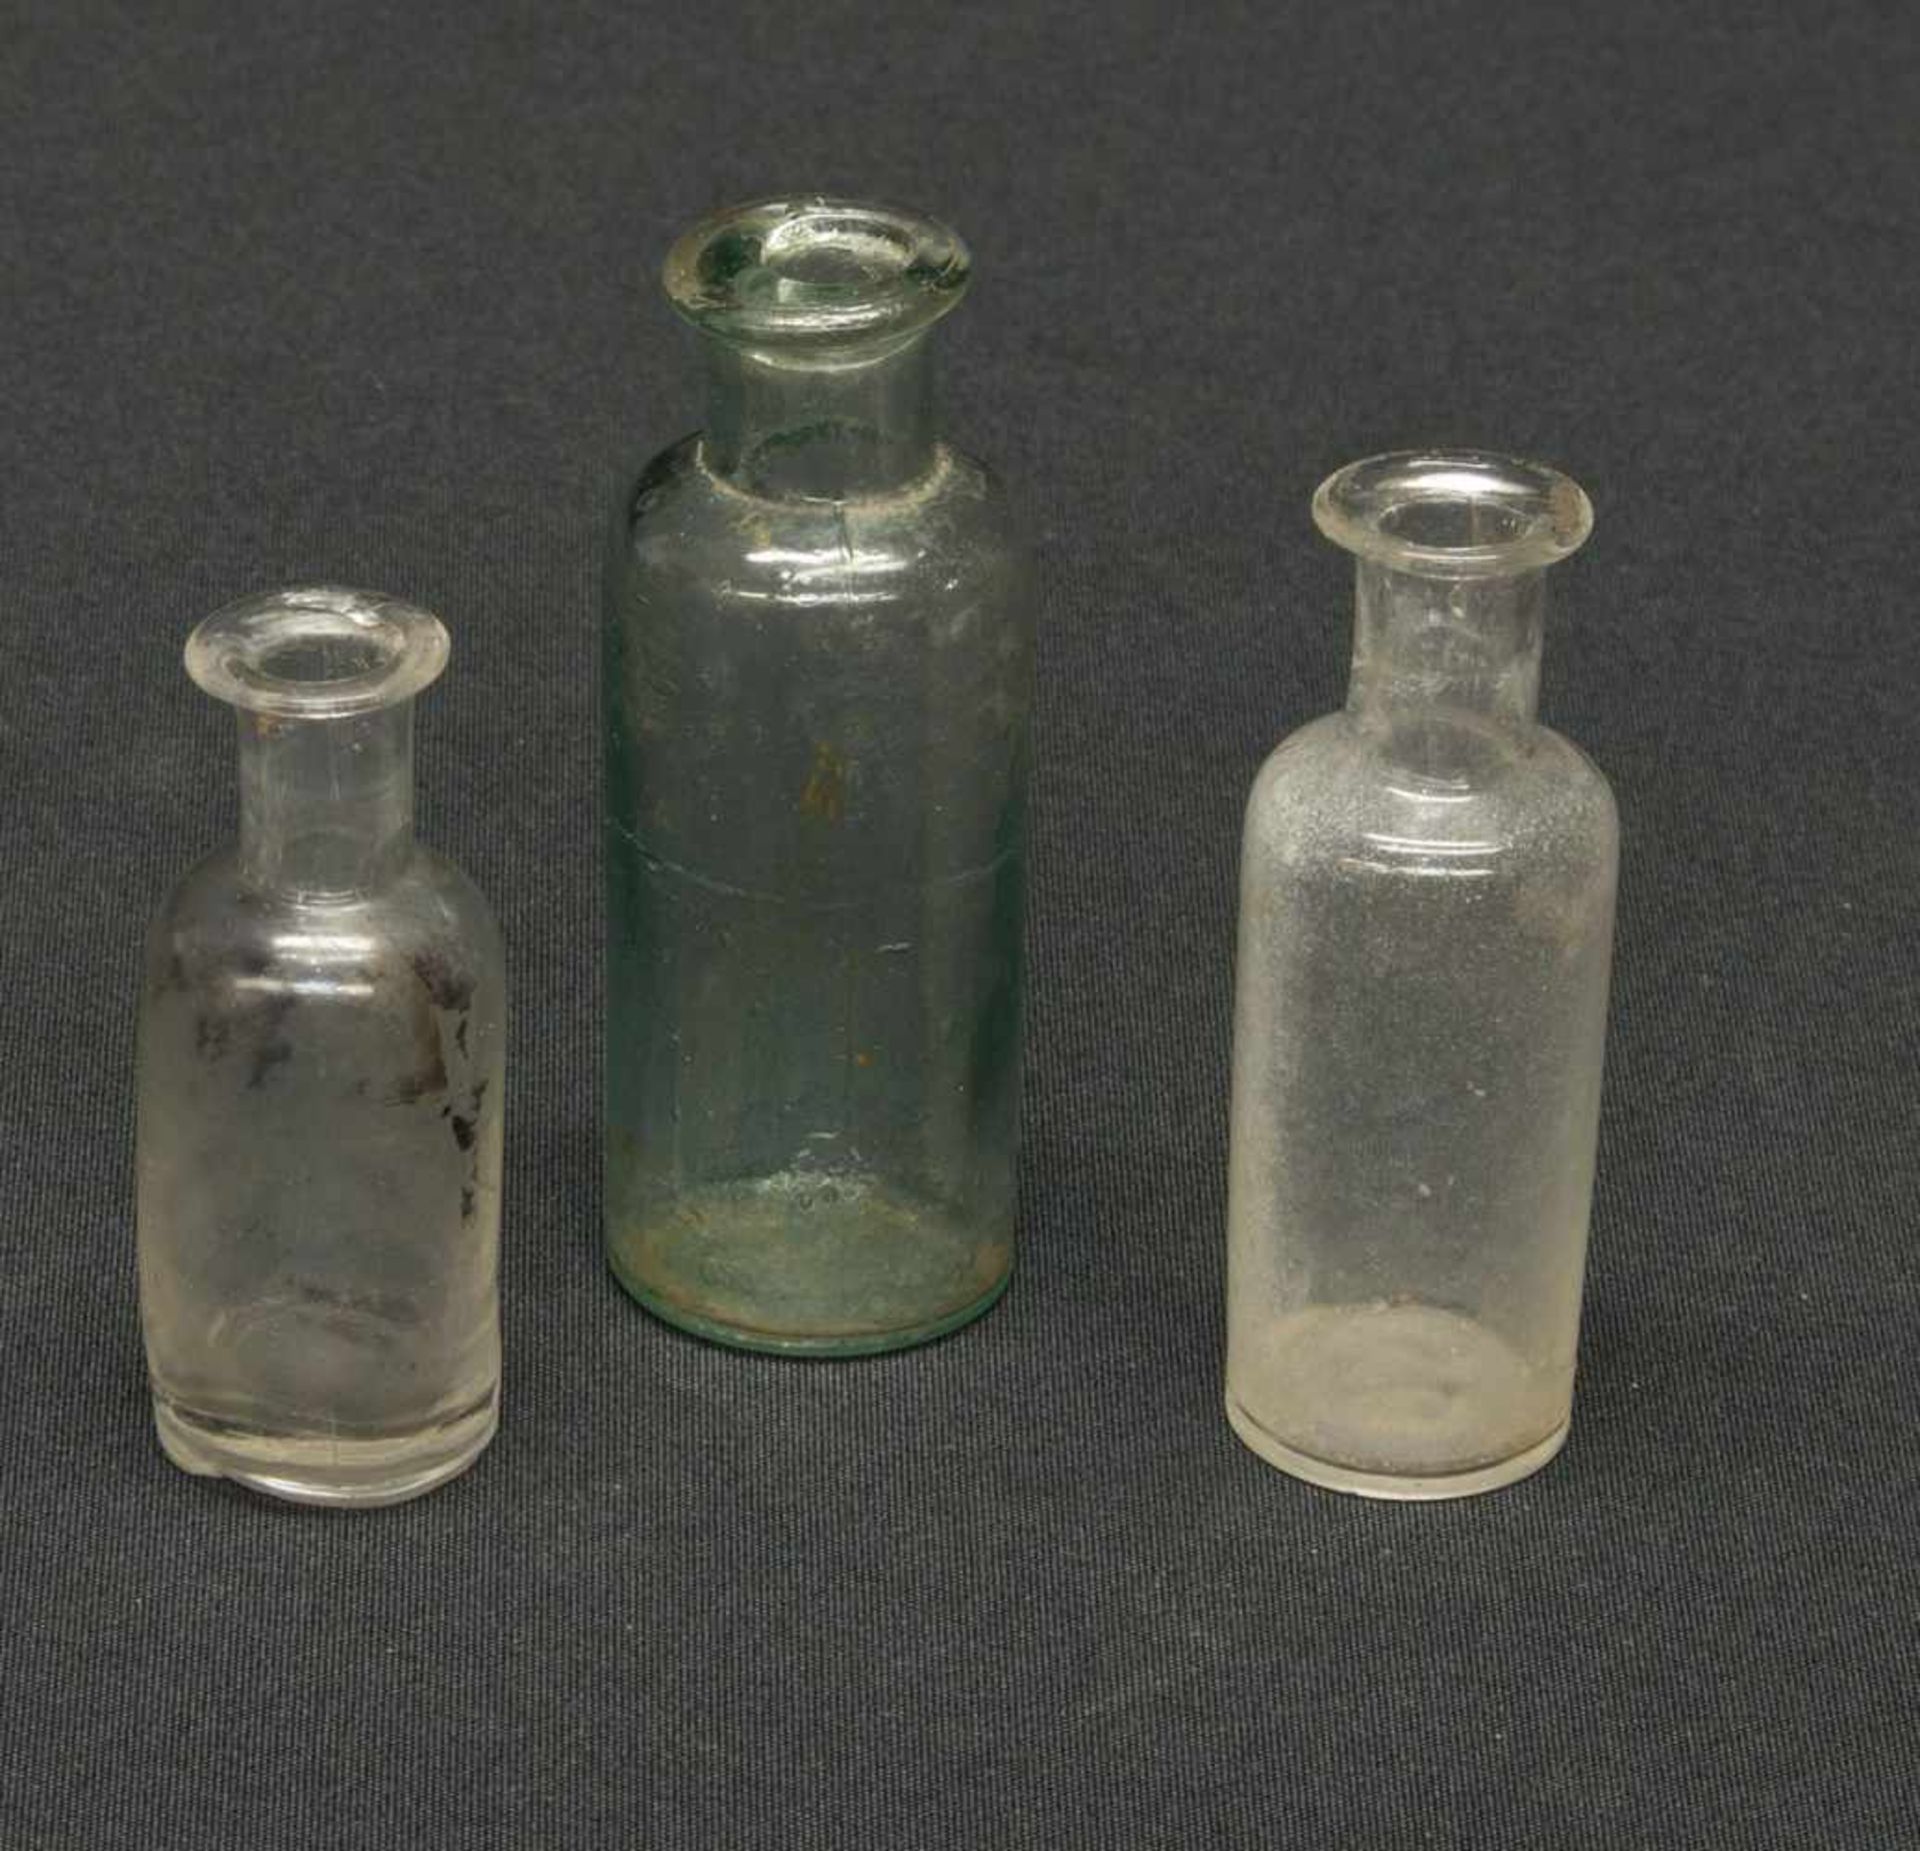 3 Apothekerfläschchenum 1900, farblose u. grünliche Glasmasse, H. 6 - 8 cm